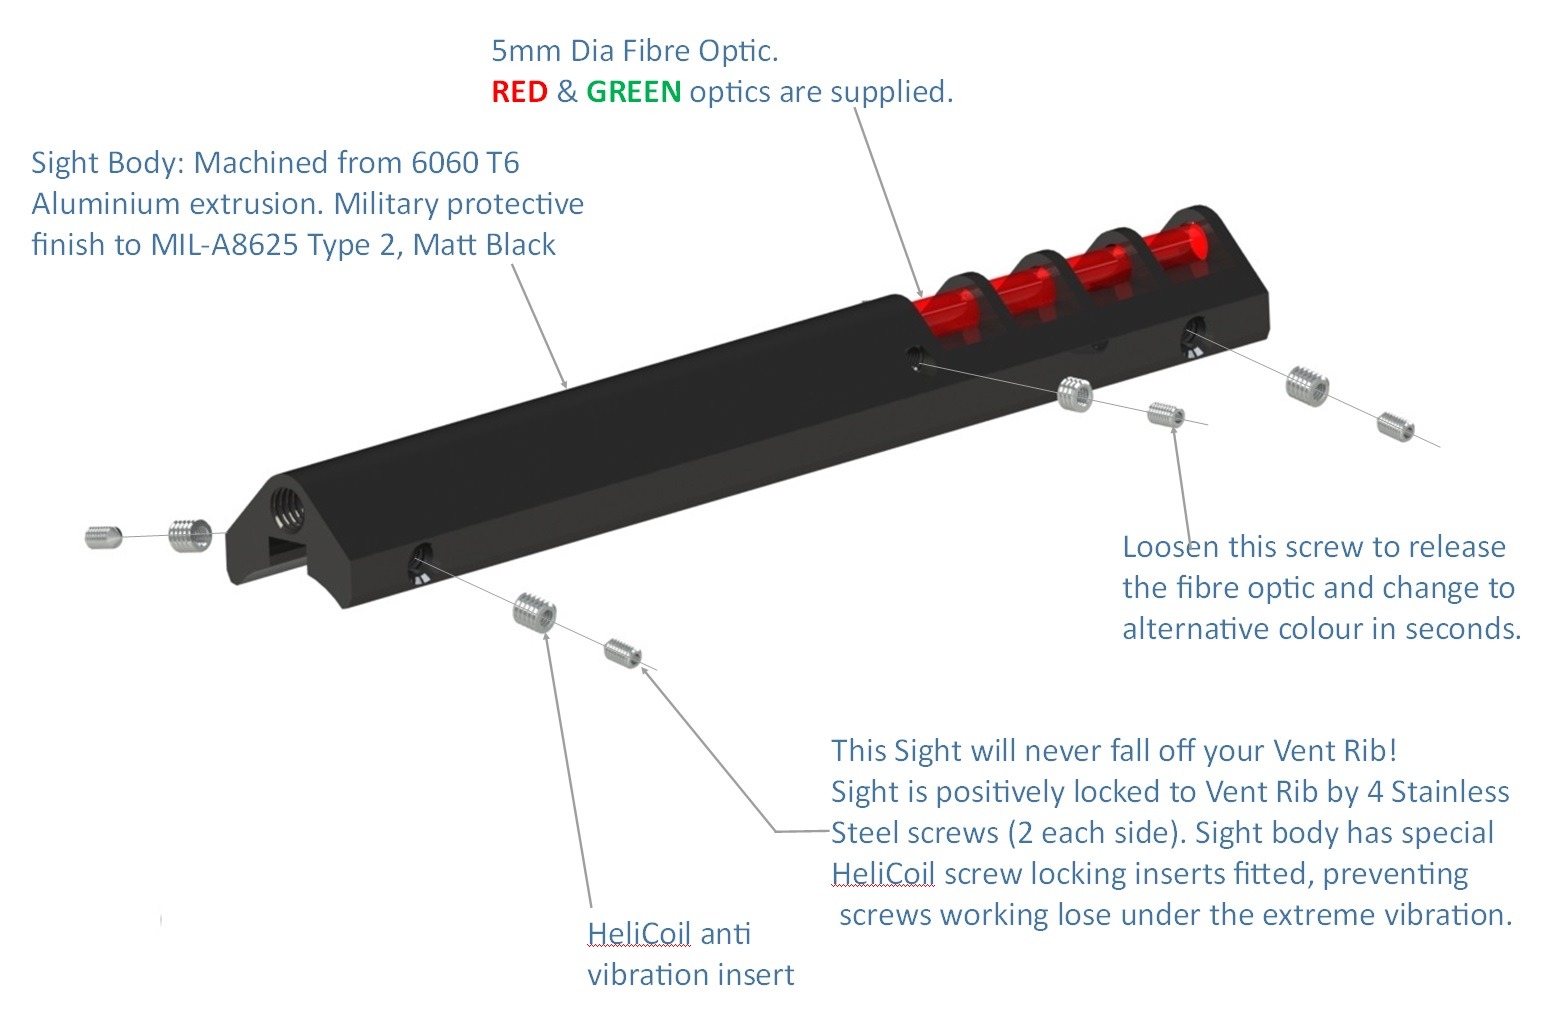 Fibre Optic Shotgun Sight attributes